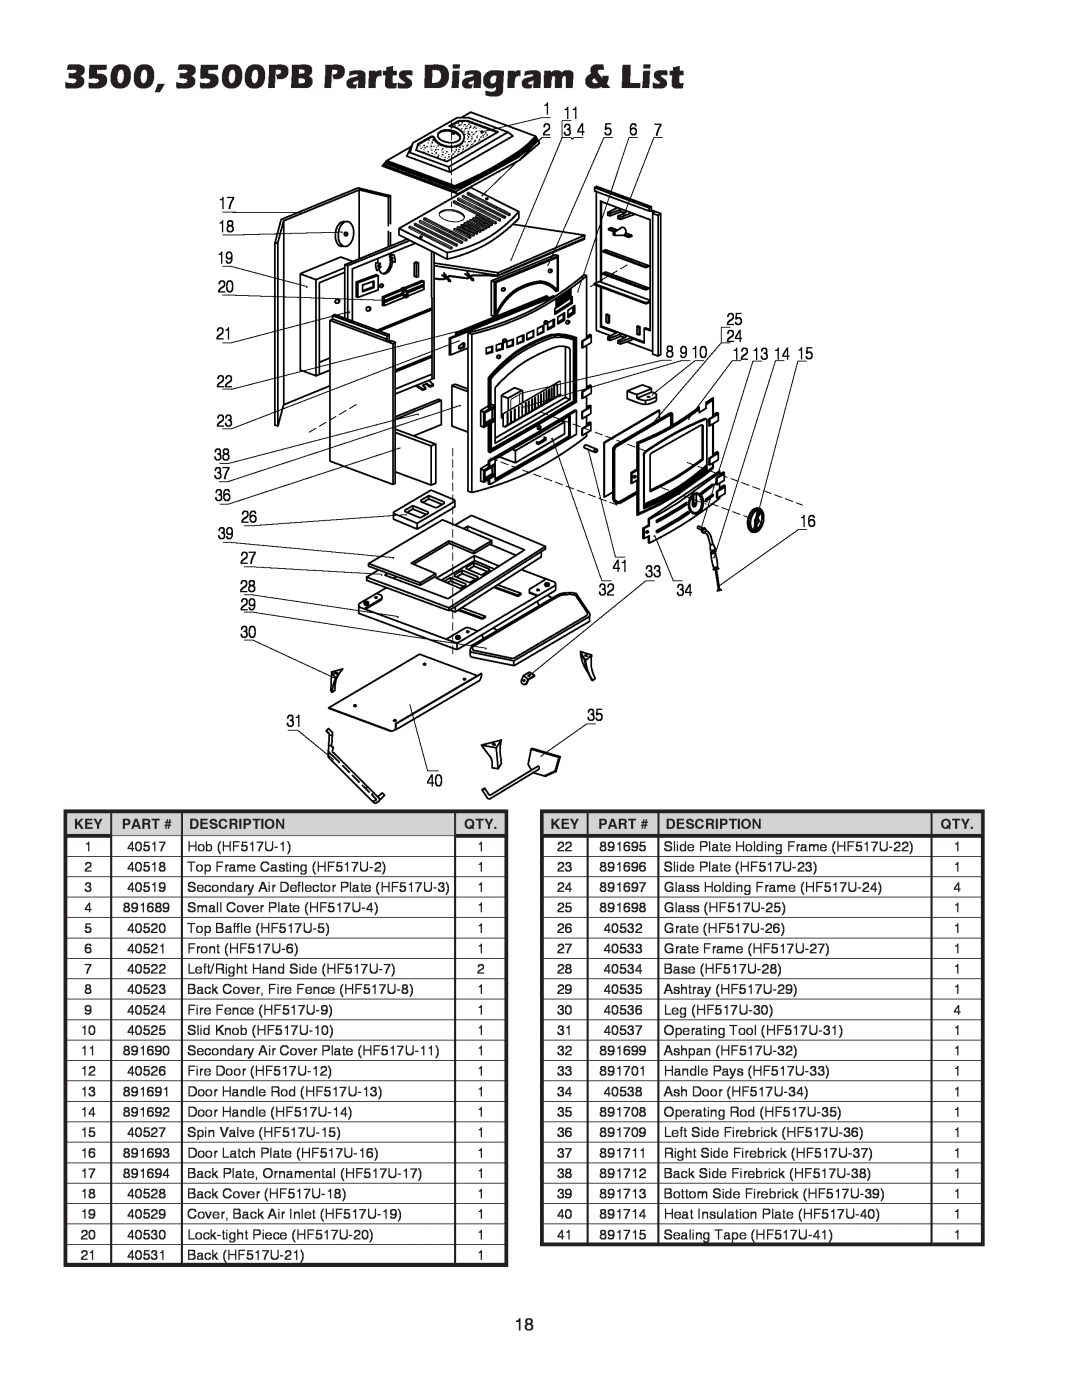 United States Stove 3700PB owner manual 3500, 3500PB Parts Diagram & List, Part #, Description 